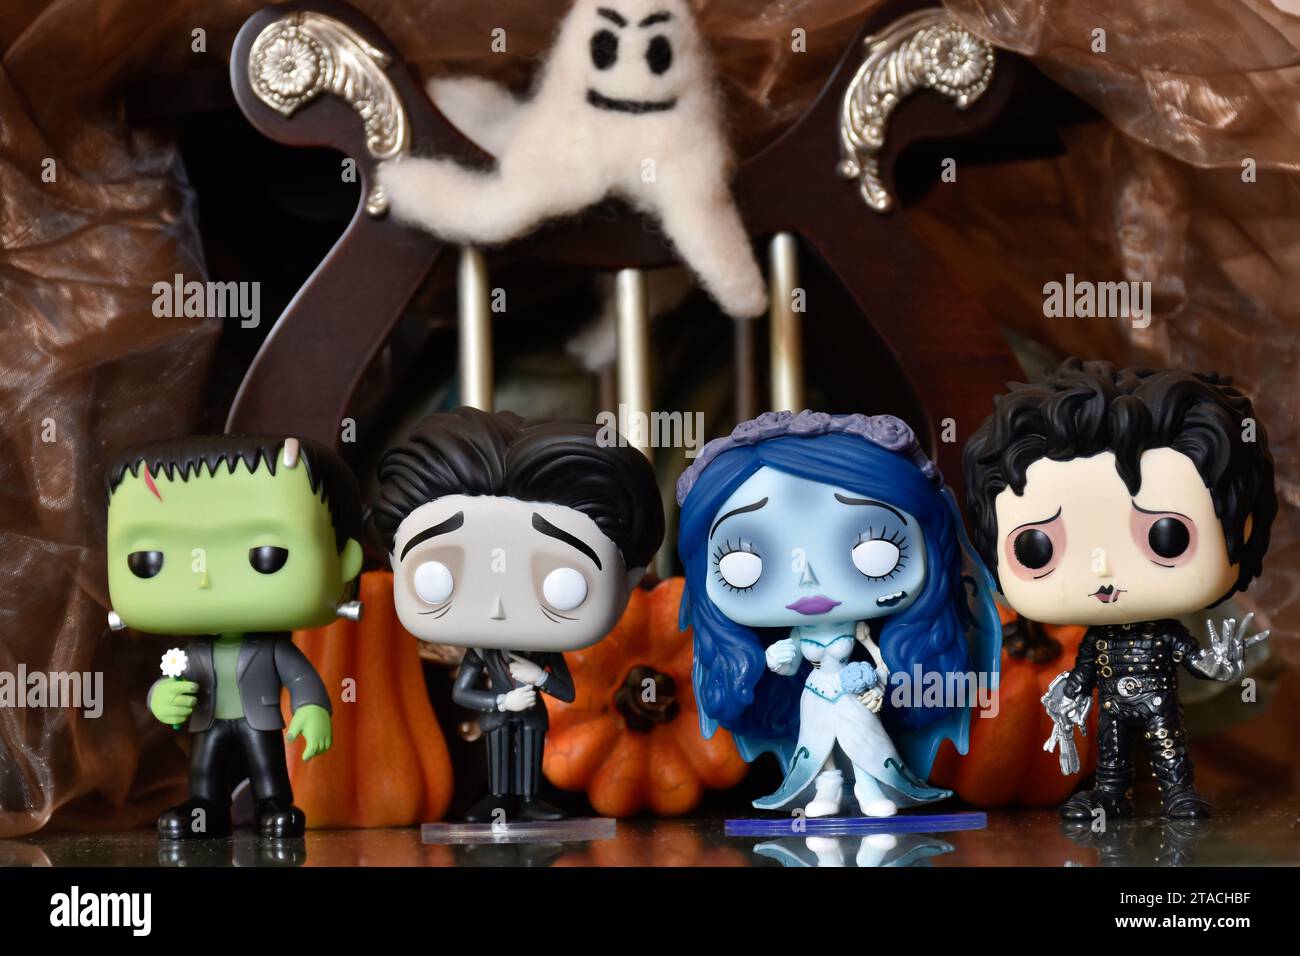 Funko Pop figurines d'action des personnages d'horreur le monstre de Frankenstein, Edward Scissorhands, Emily et Victor de Corpse bride. Décorations d'Halloween. Banque D'Images